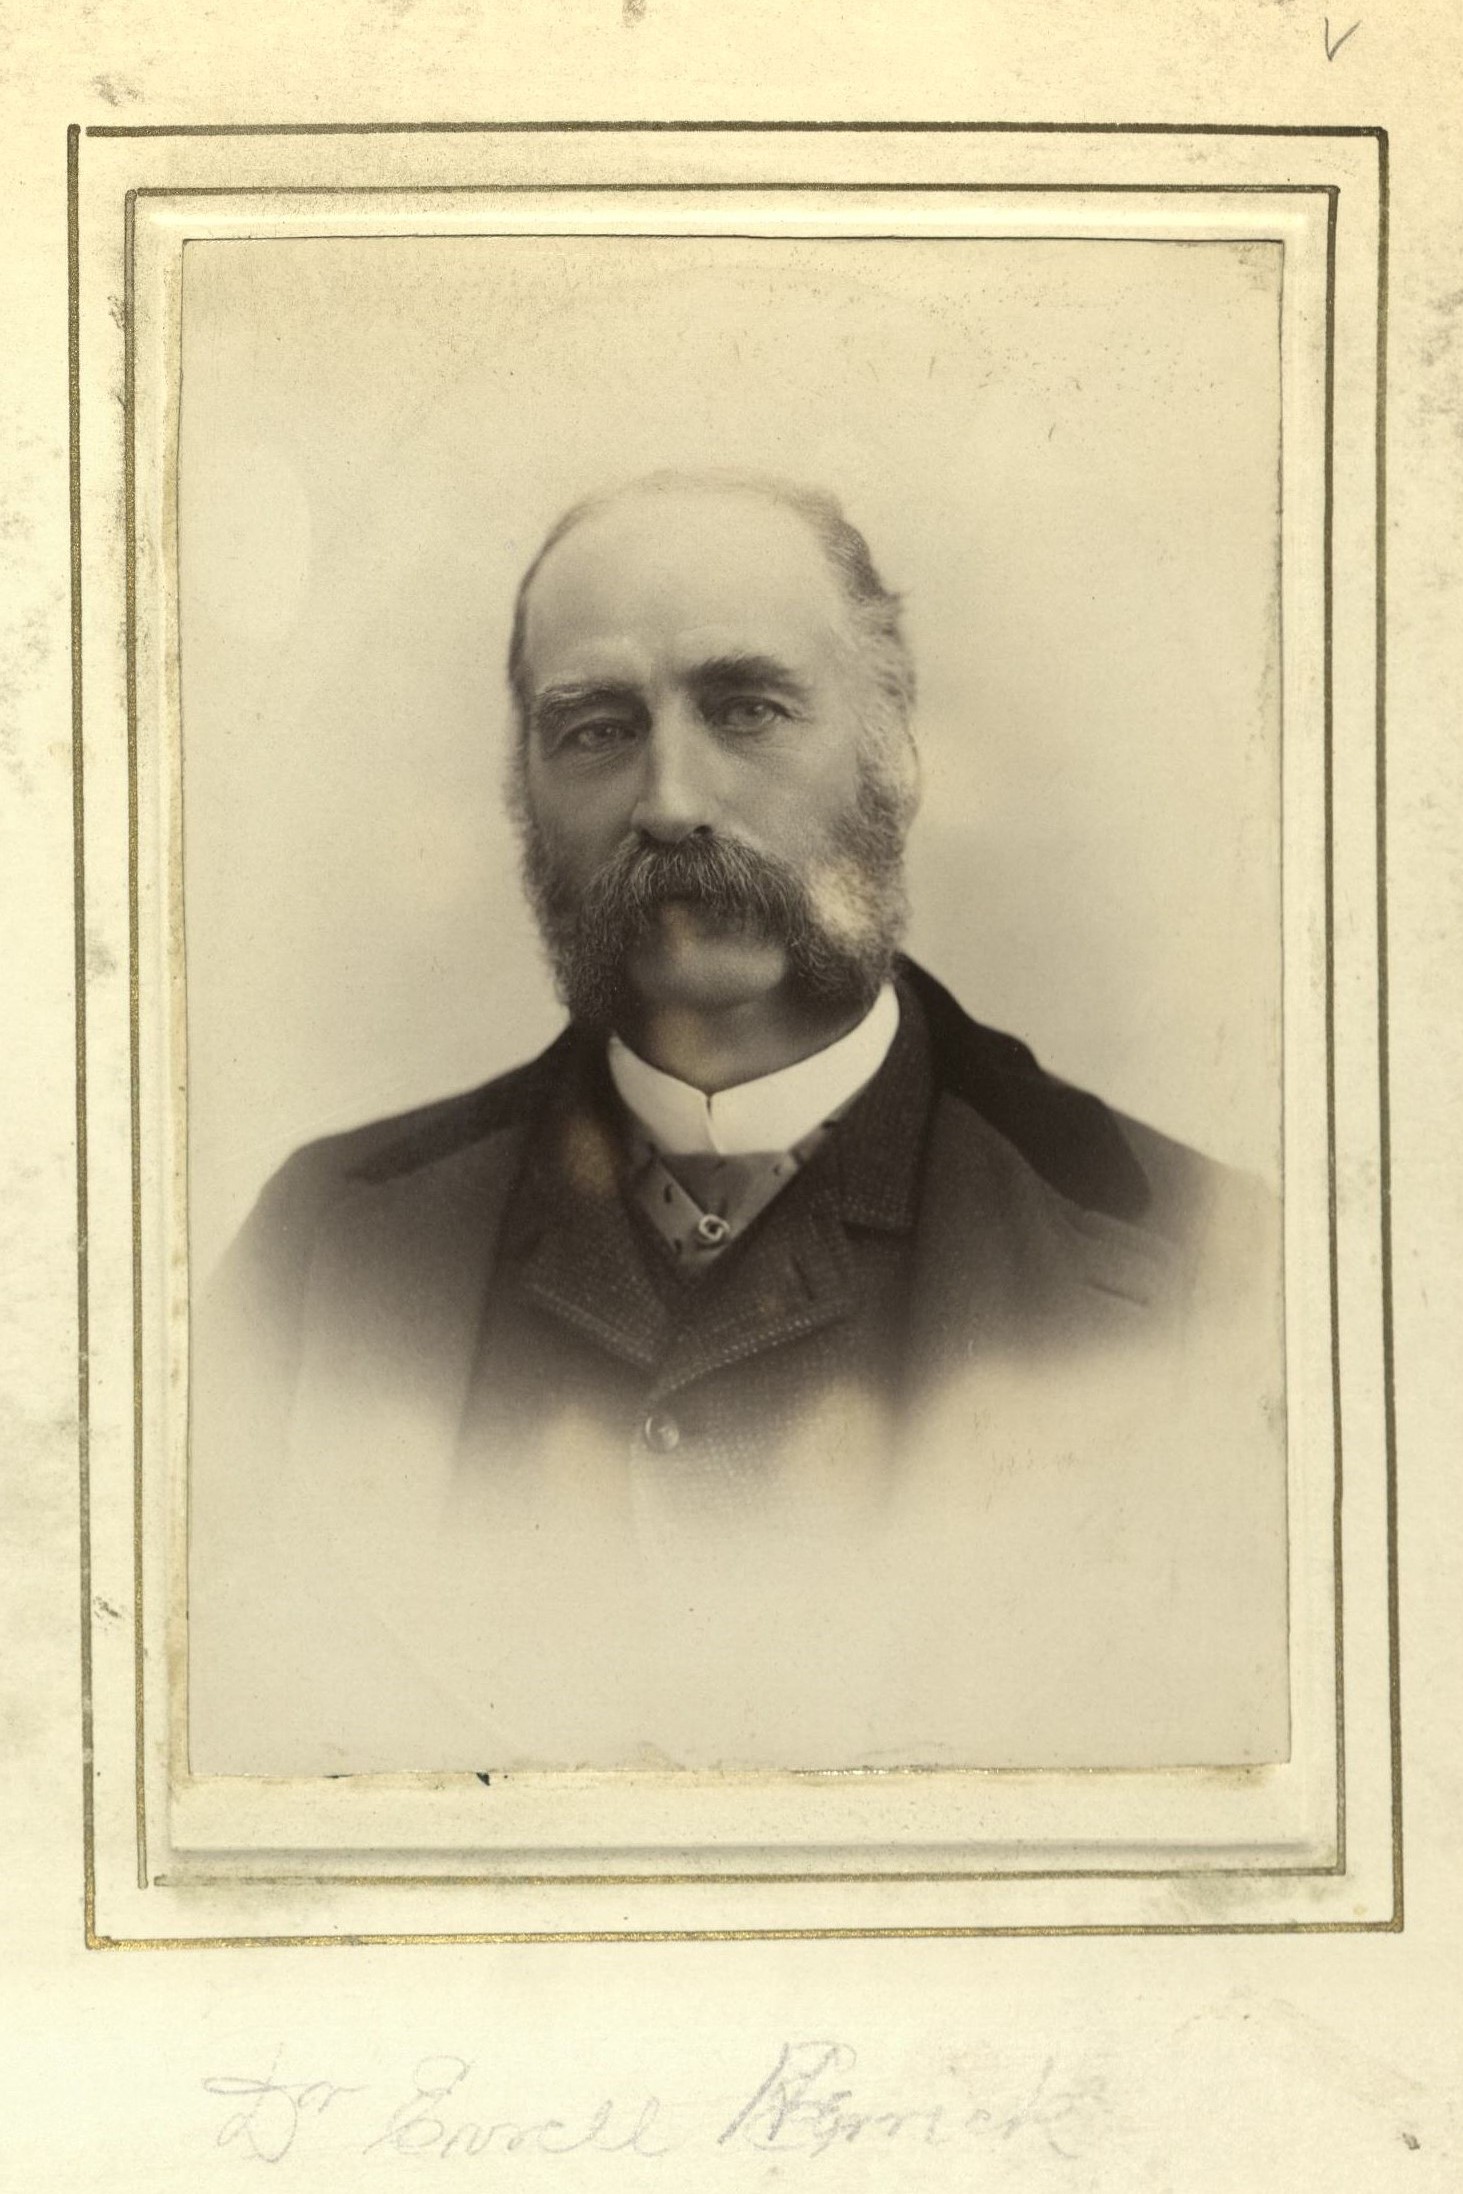 Member portrait of Everett Herrick